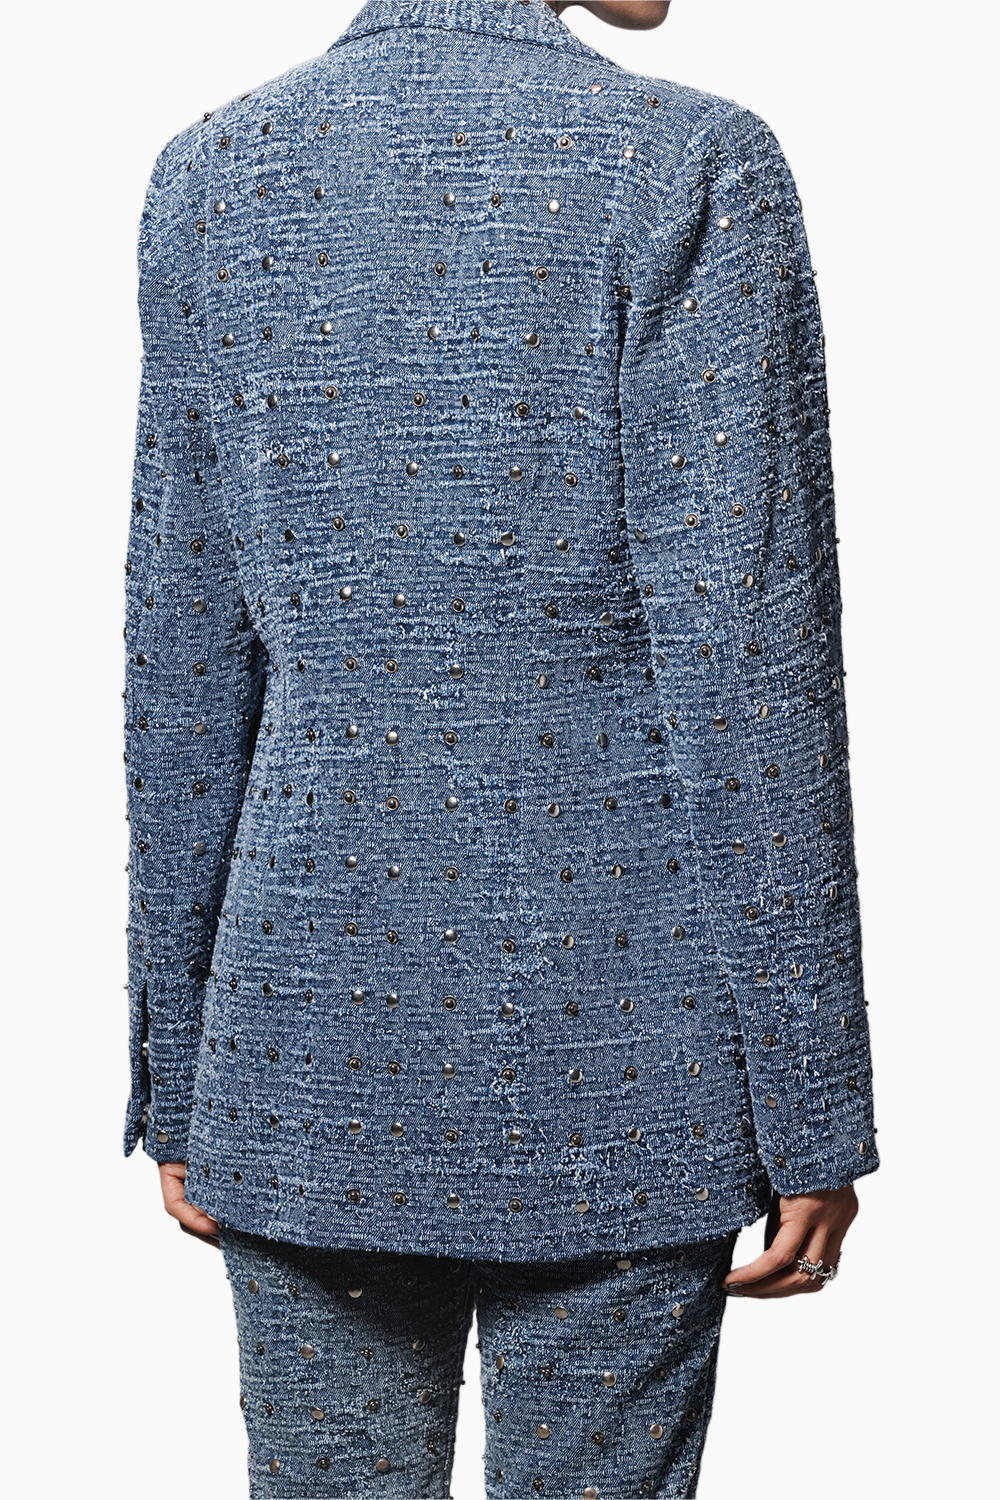 Blue Washed Distressed Denim Studded Pantsuit